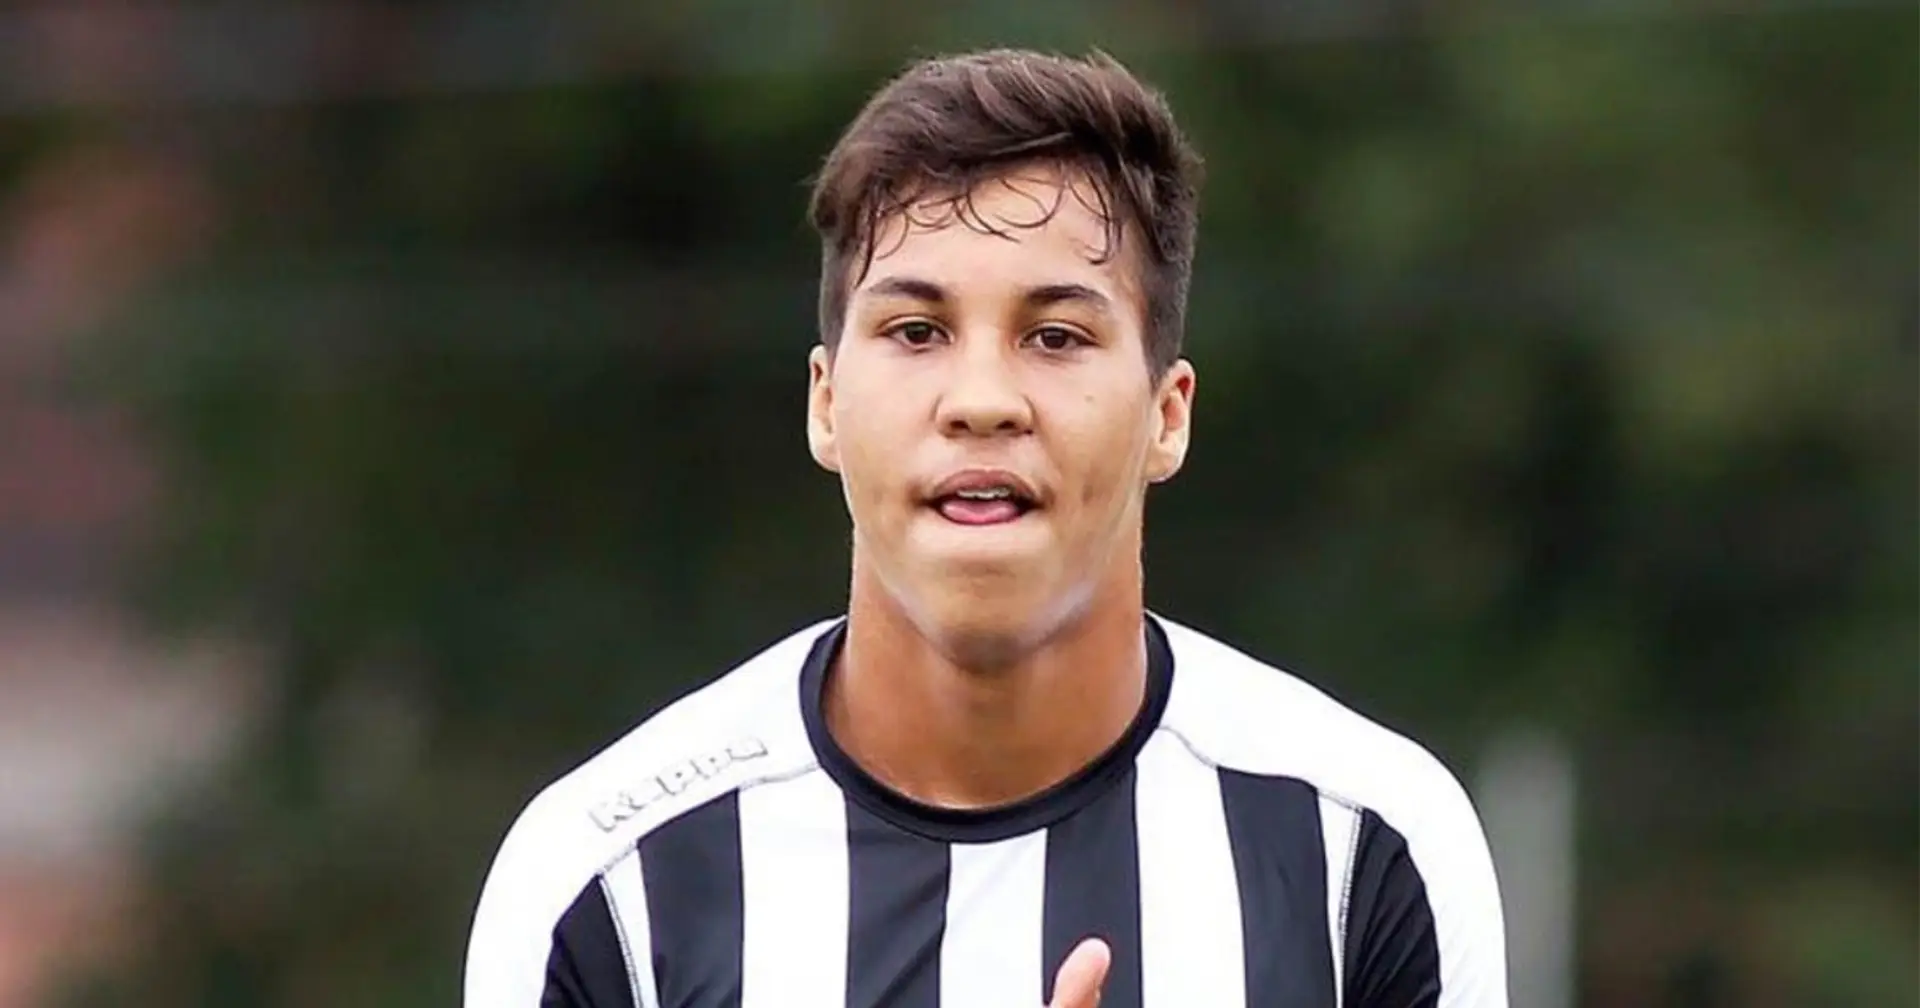 L'OM continue de sonder au Brésil pour recruter l'attaquant tant désiré, un jeune de 18 ans du Santos dans le viseur